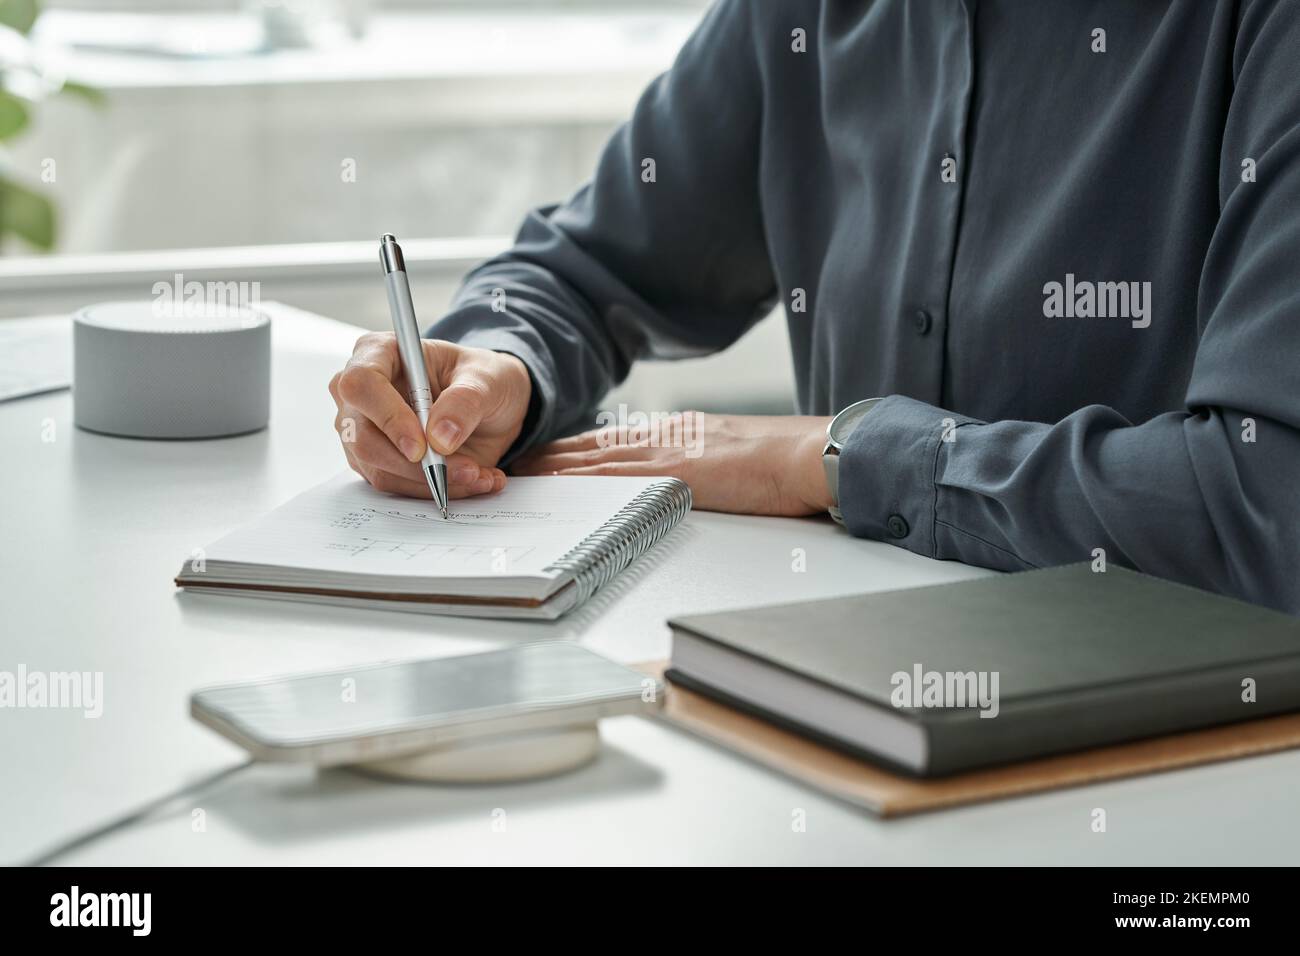 Nahaufnahme des Managers, der Pläne in Notizblock schreibt, während er mit modernen drahtlosen Geräten am Tisch sitzt Stockfoto